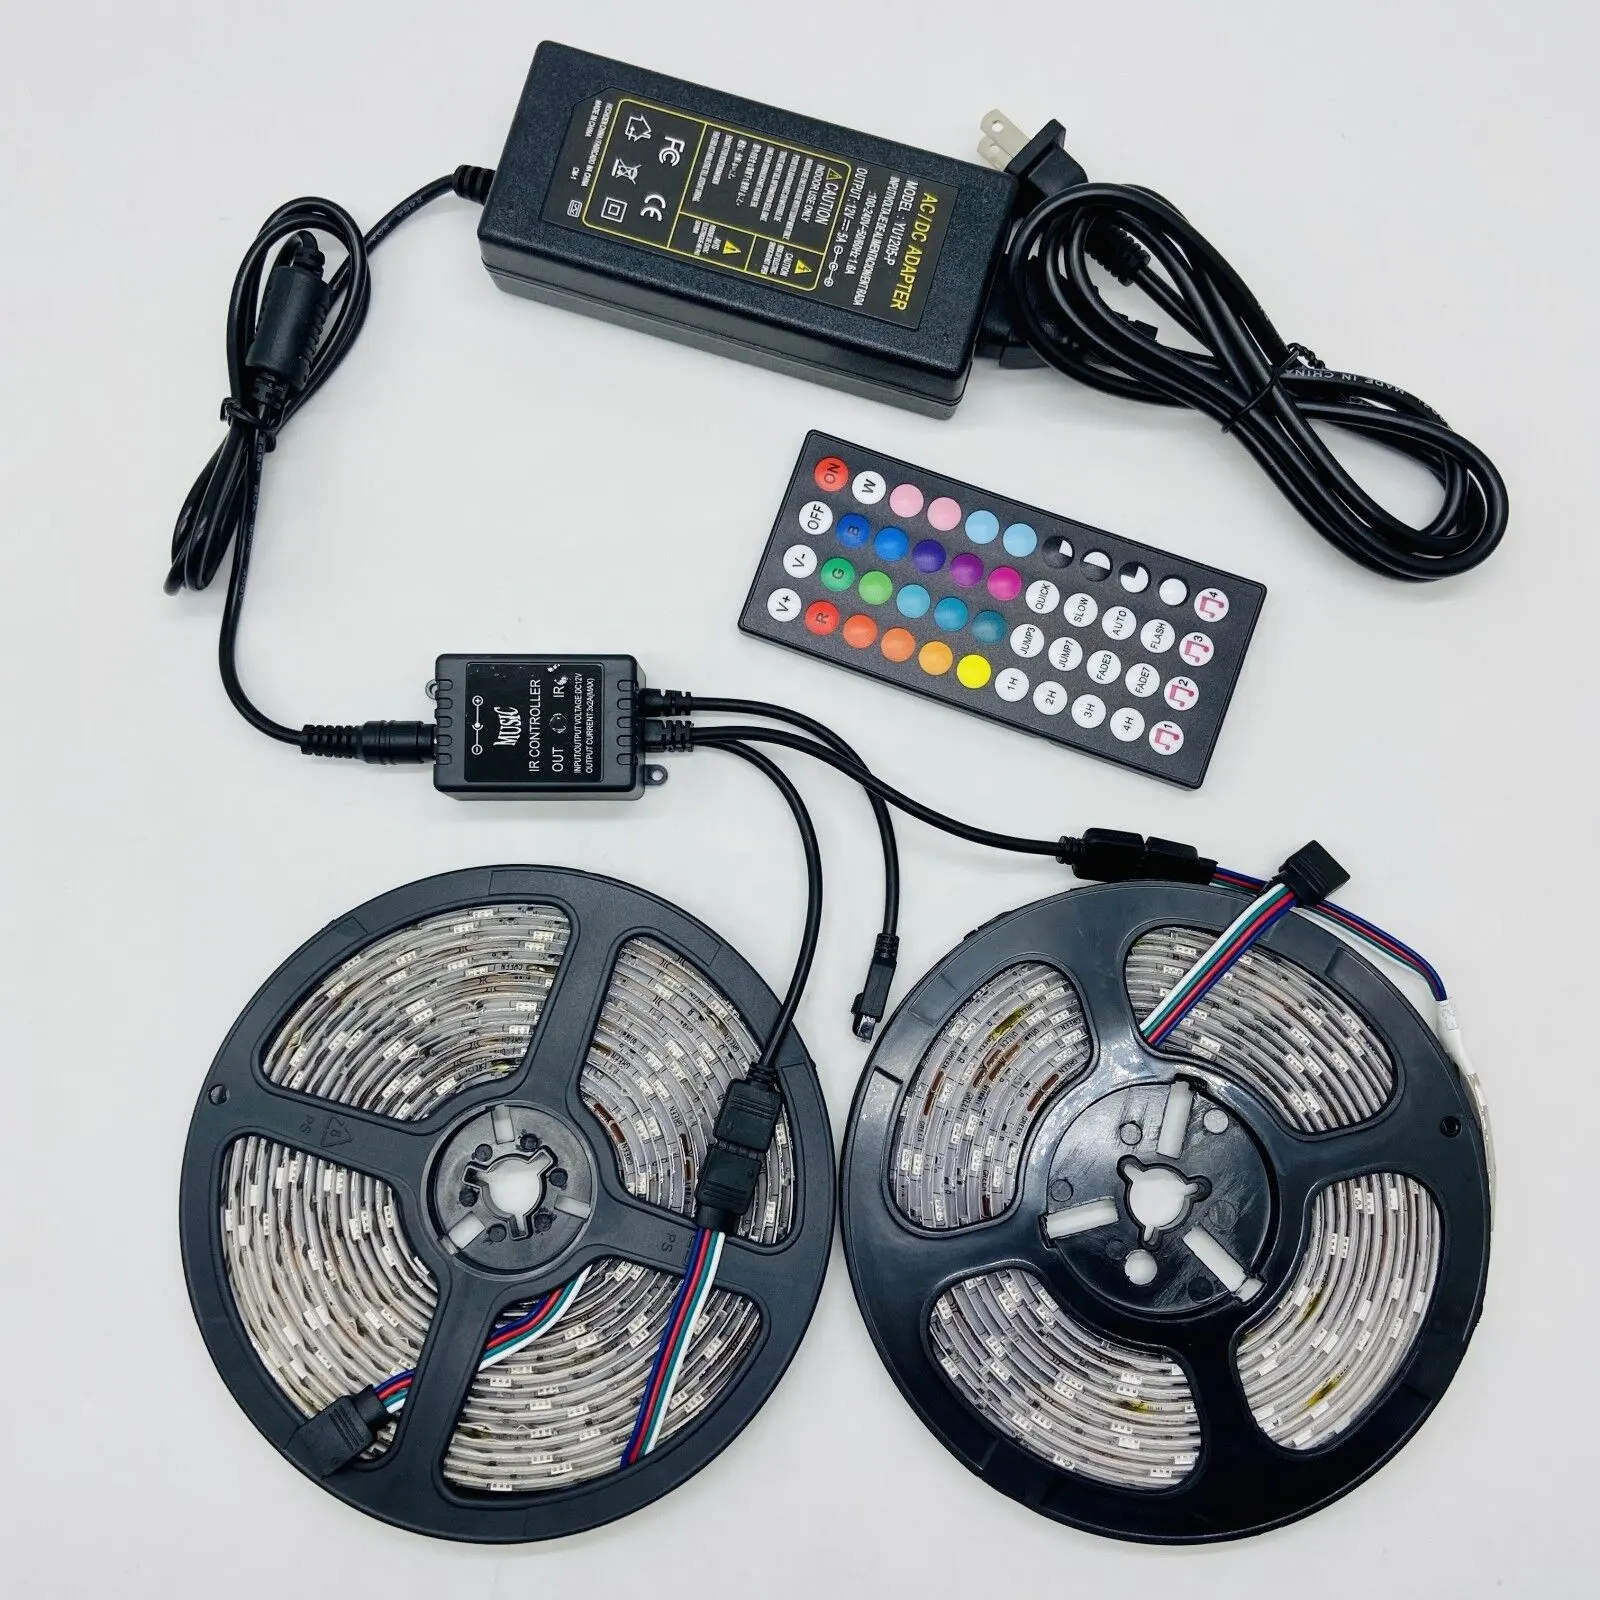 44 tuşları müzik ses sensörü denetleyici ses IR uzaktan kumanda RGB 10M 3528 5050 LED şerit ışık RGB kontrolörleri